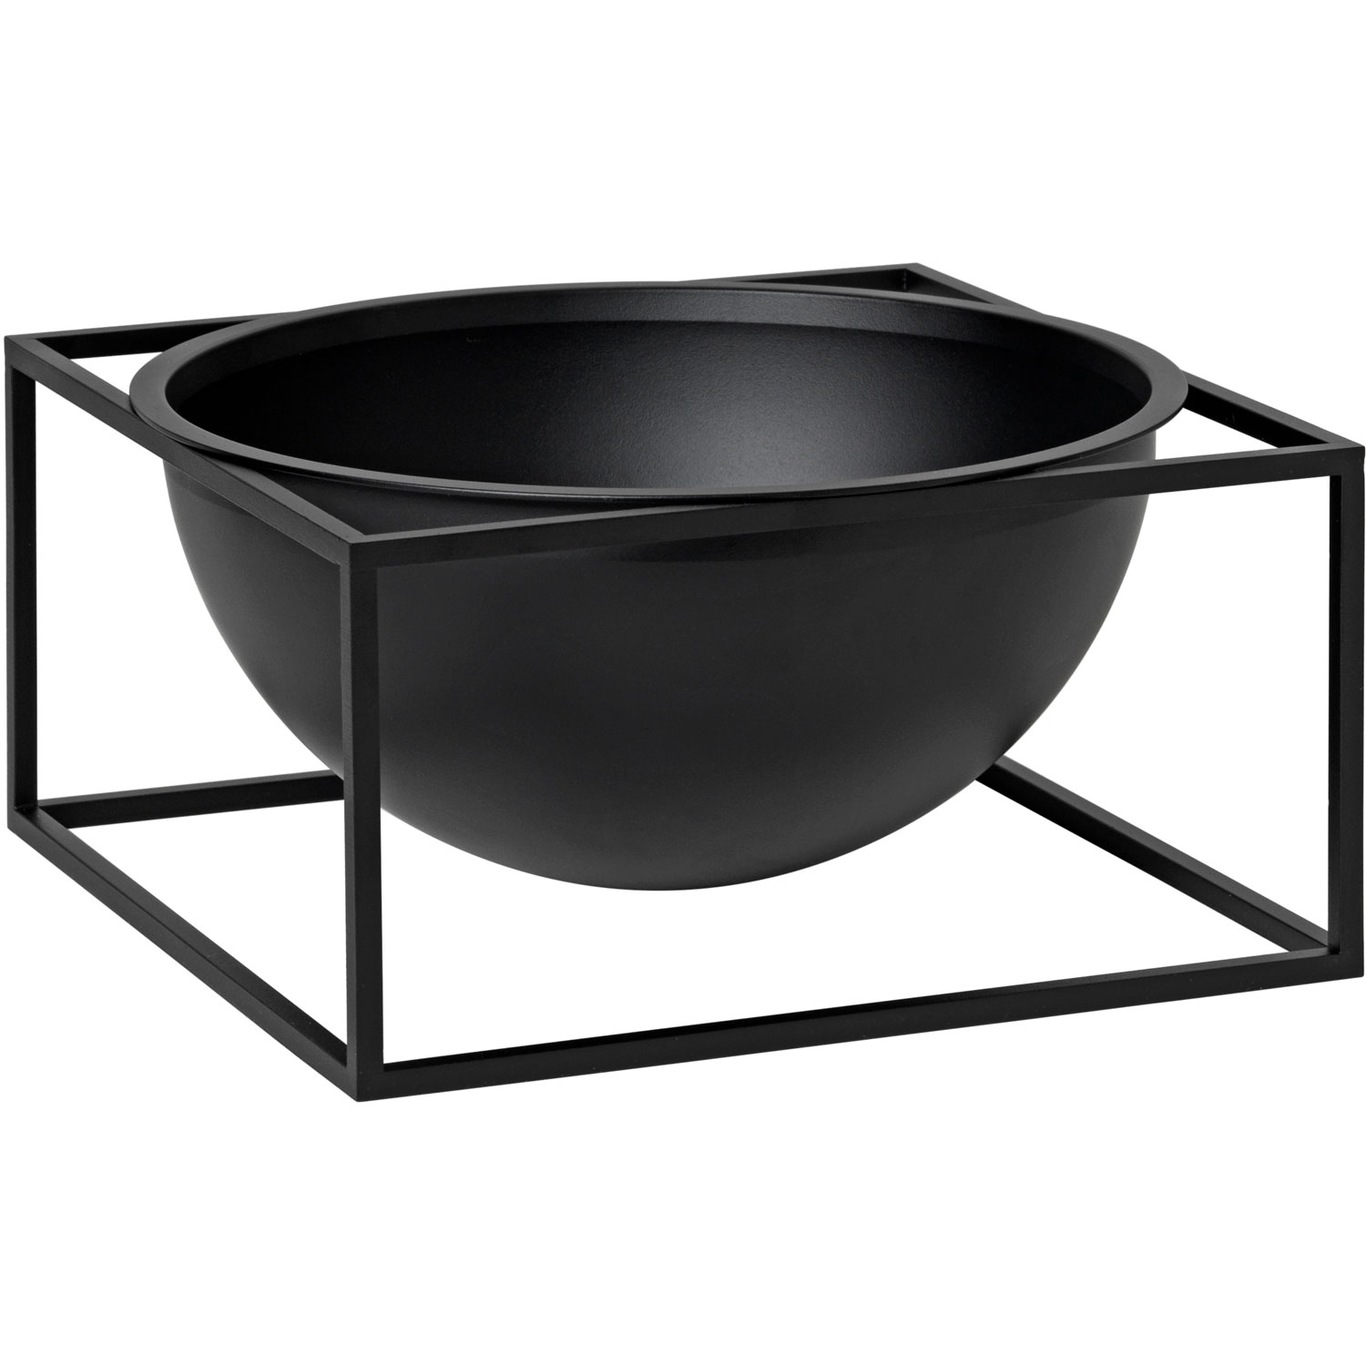 Kubus Bowl Centerpiece Large, Black